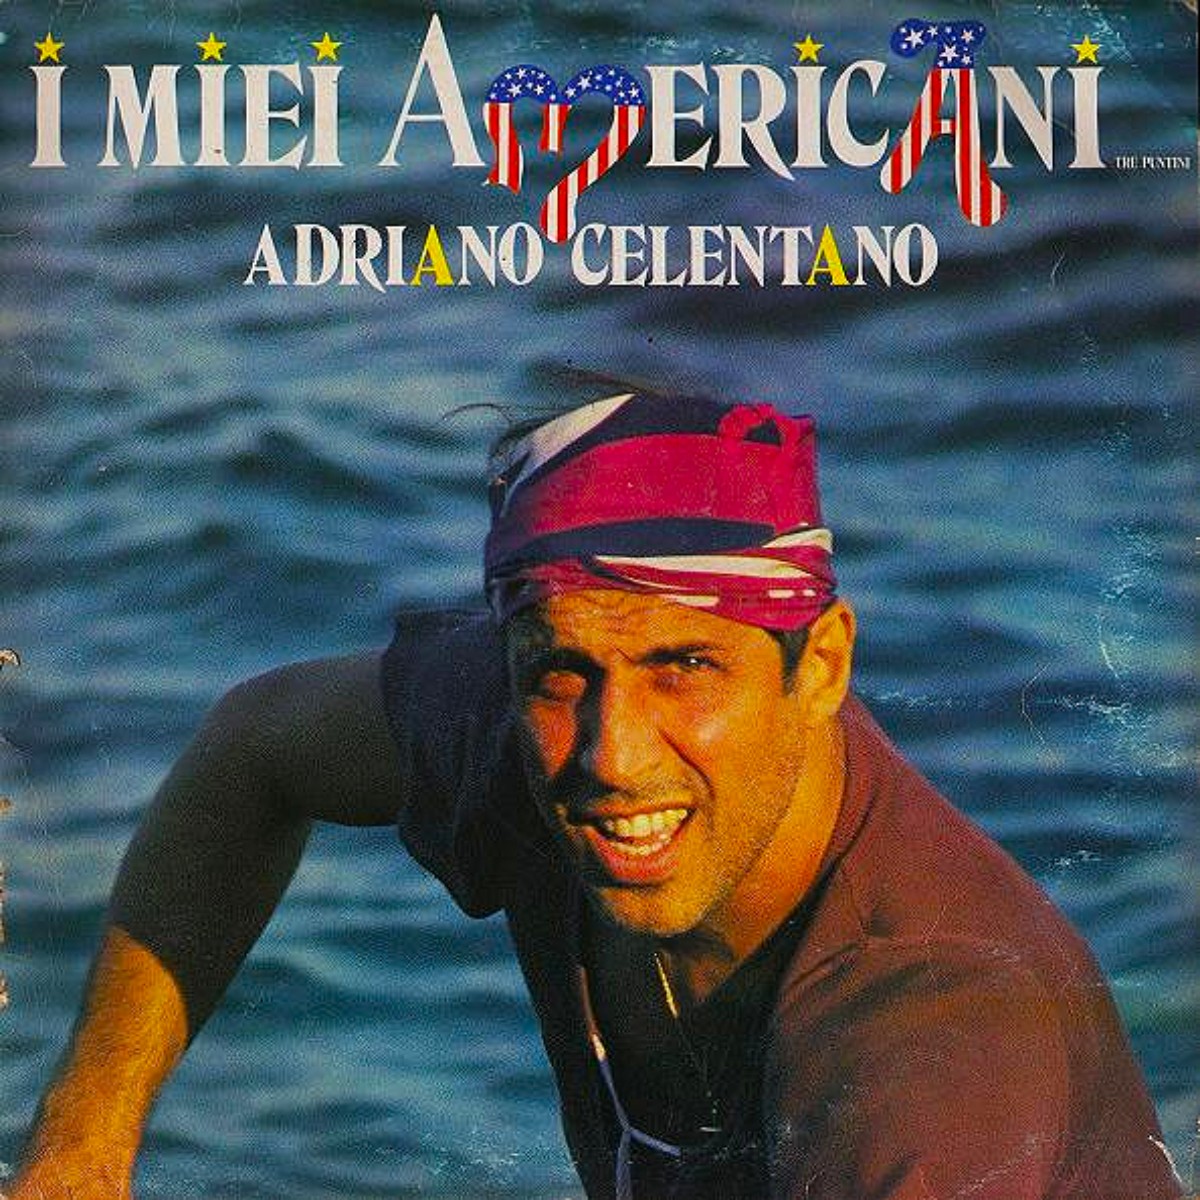 Adriano Celentano，专辑 I miei Americani